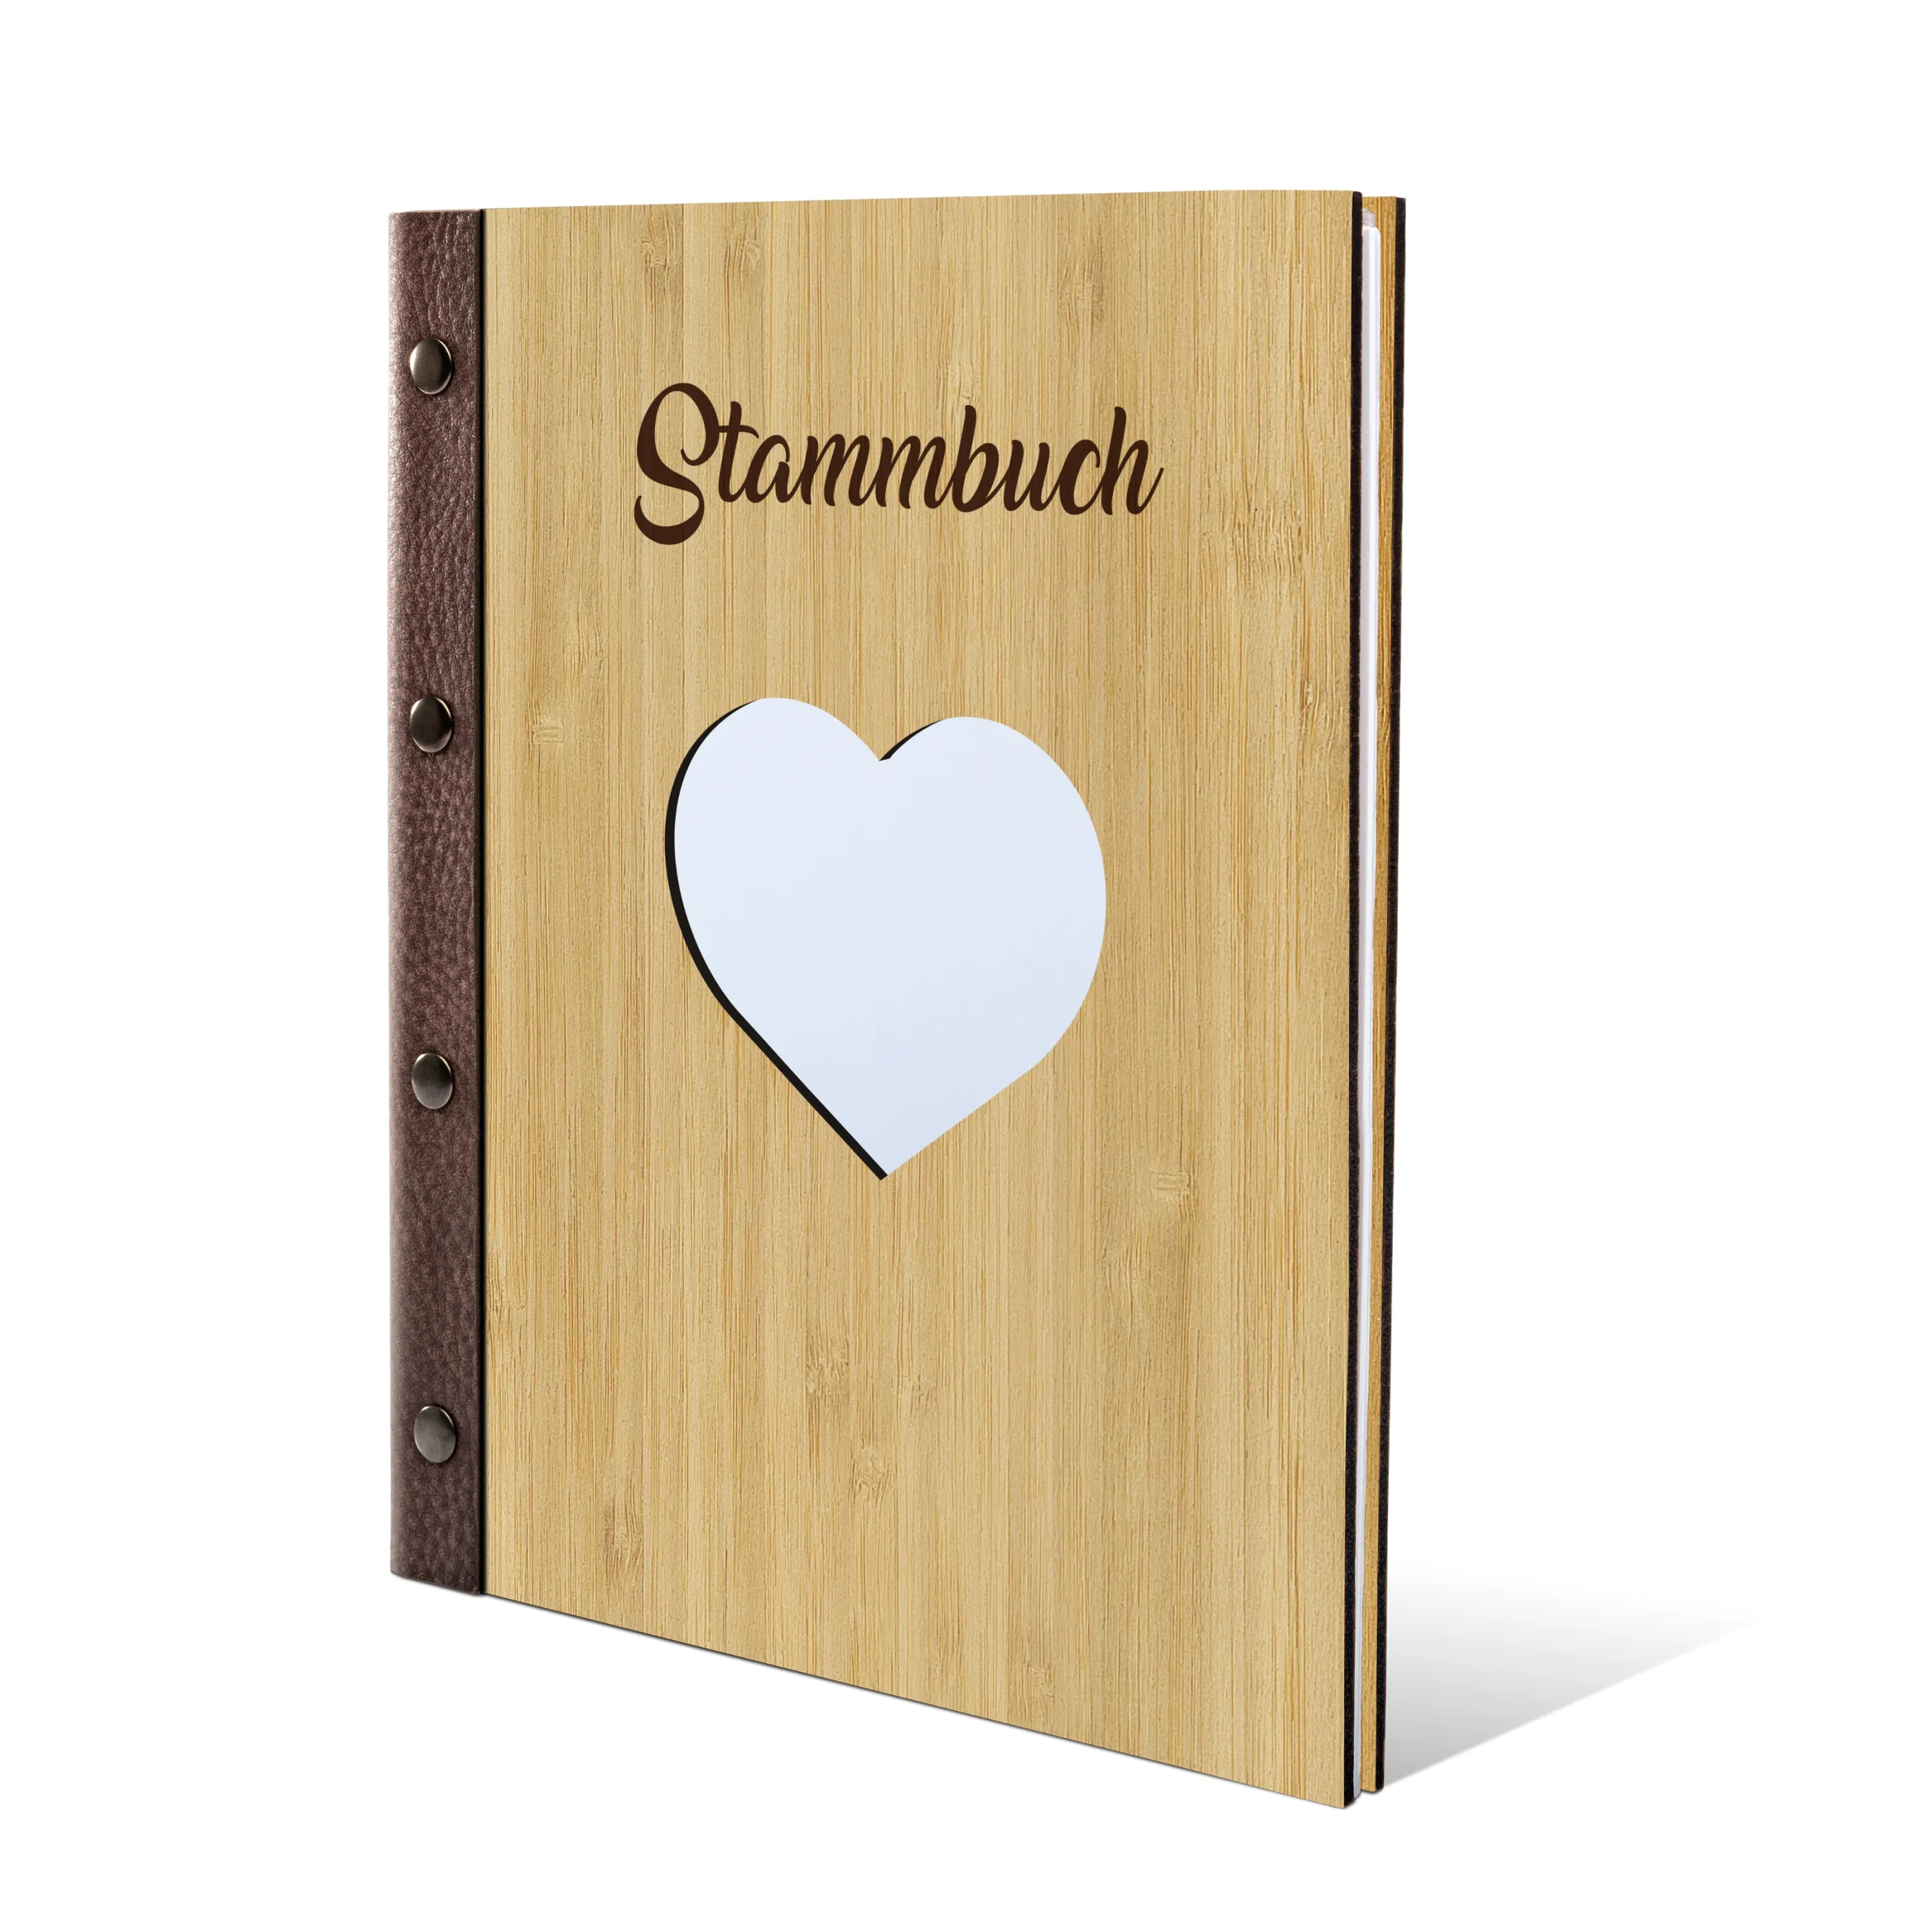 Stammbuch Bambus Stammbuchformat - Herz